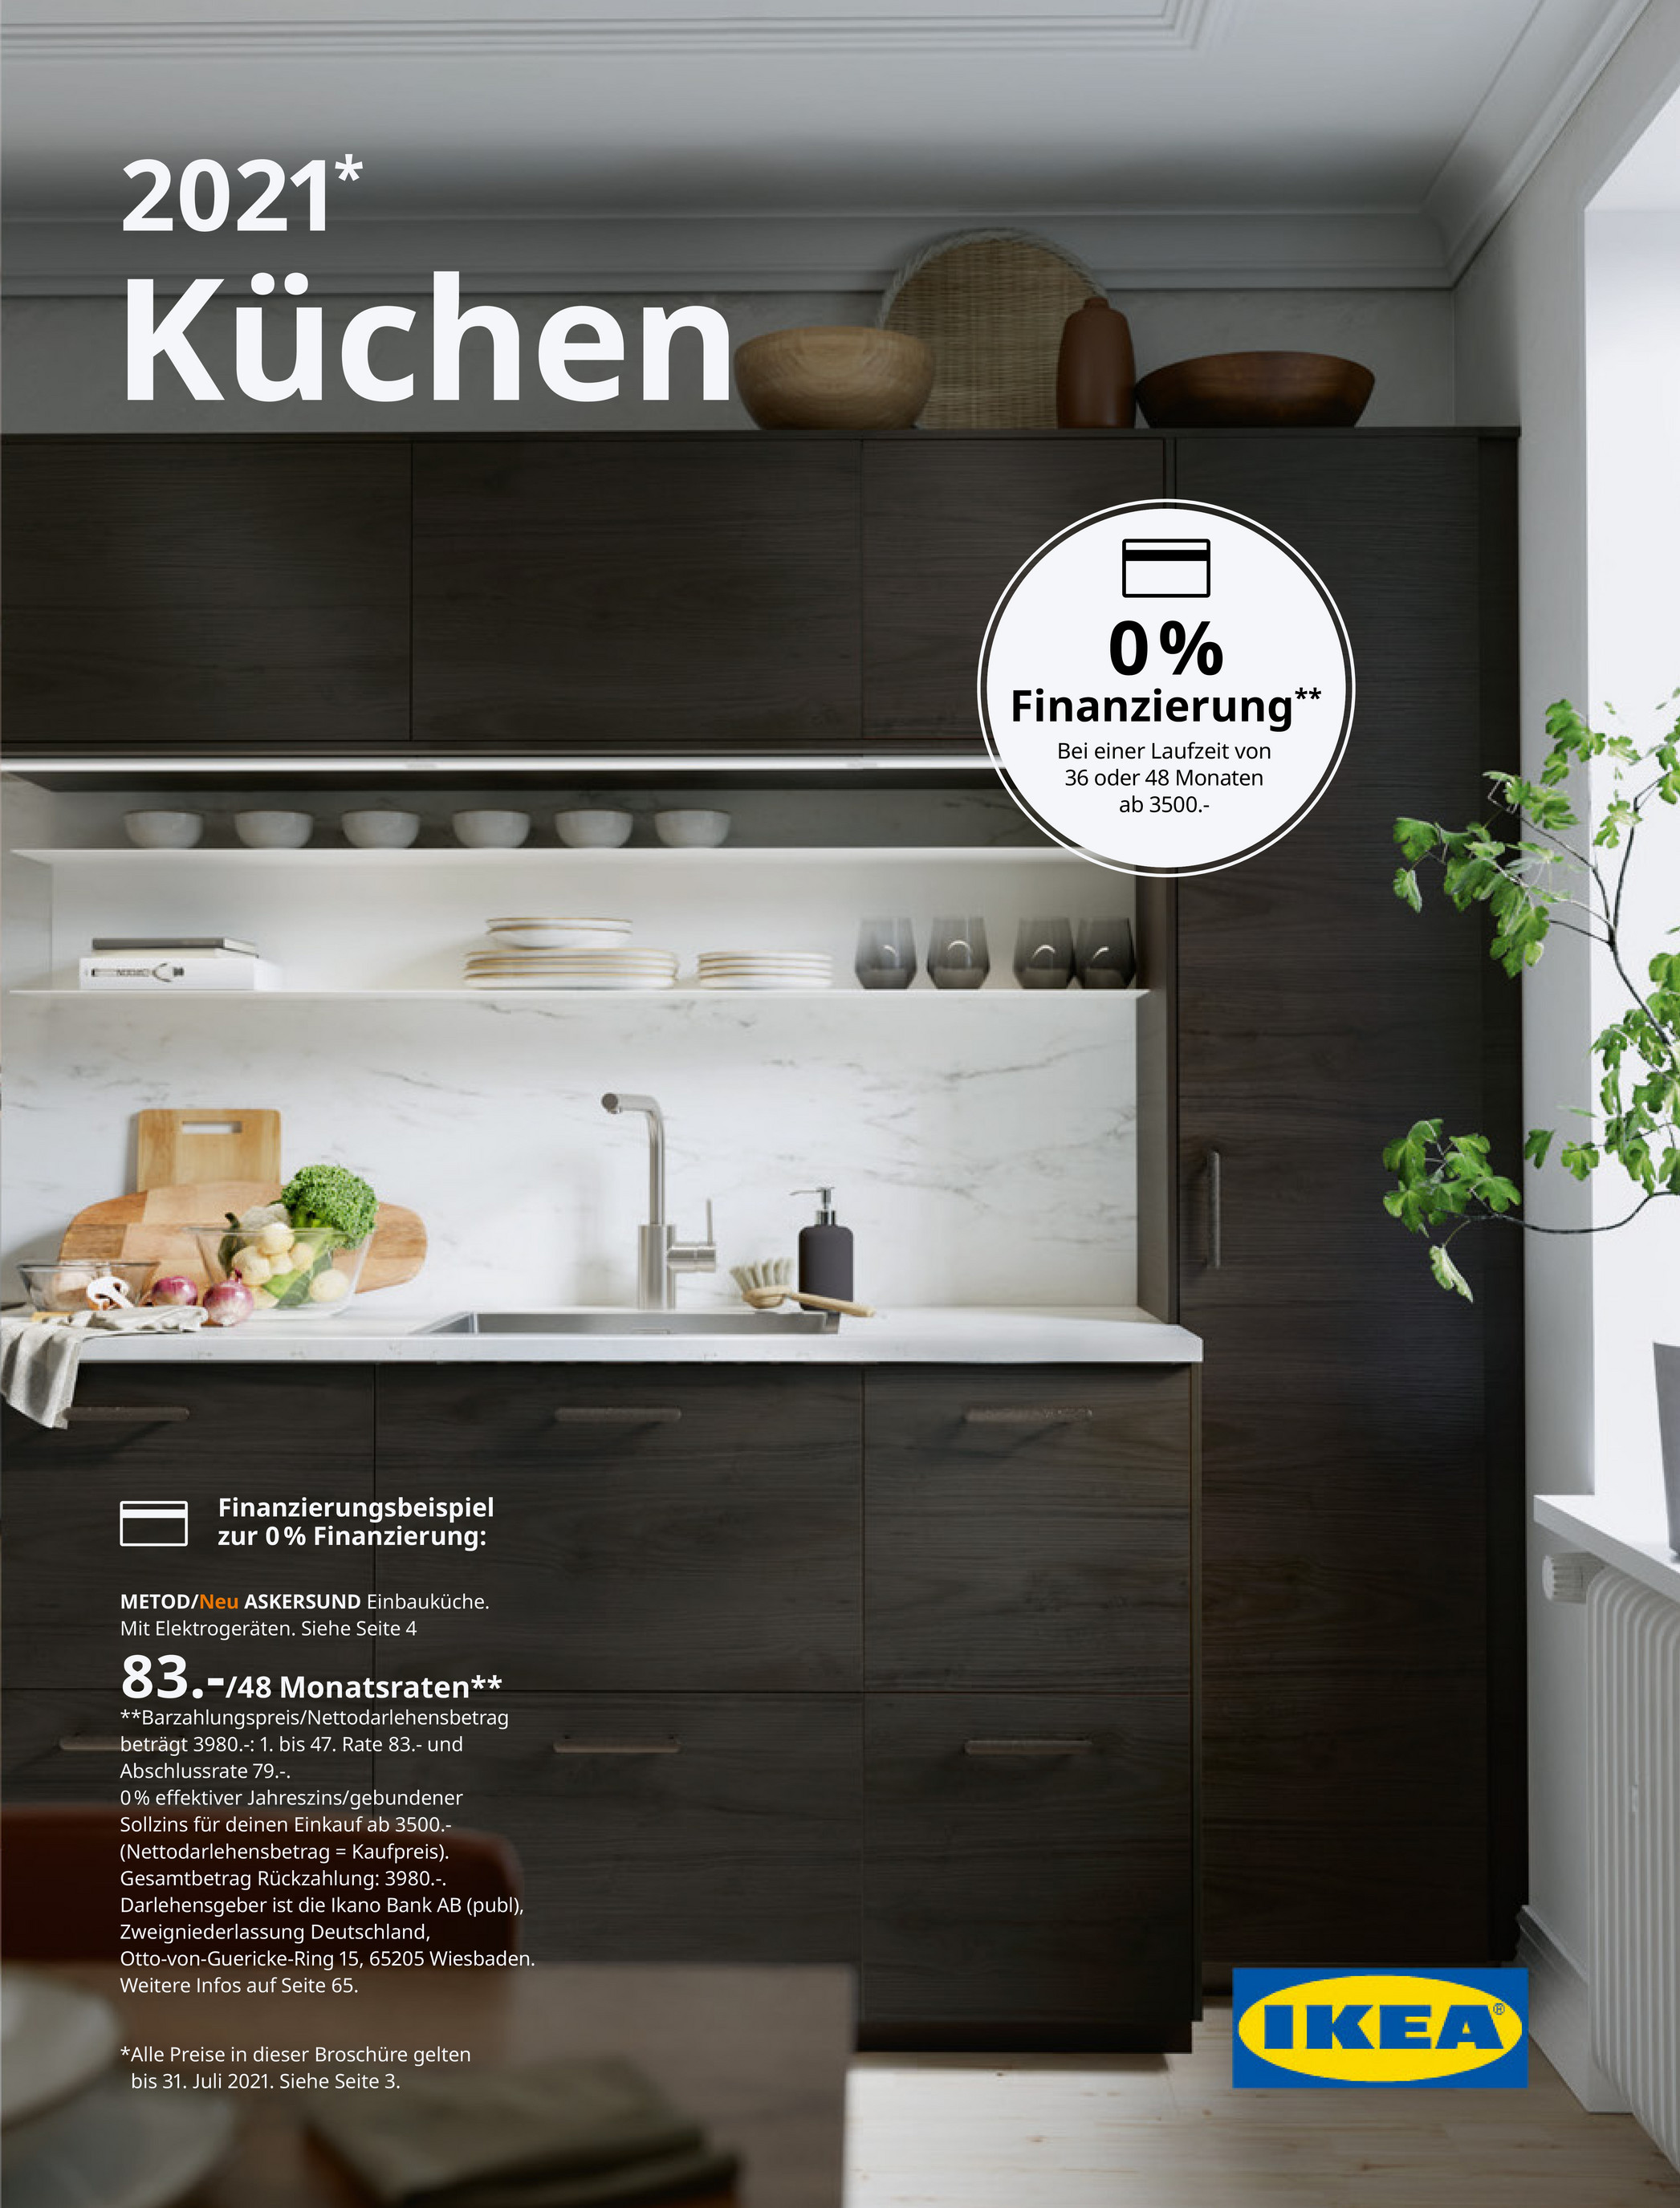 Ikea Kchen Katalog 2020 Anda Dapat Melihat Brosur Ikea Secara Online Menggunakan Tautan Di Bawah Ini Atau Dapat Juga Mengambil Katalog Tercetak Di Toko Terdekat Goimages Now